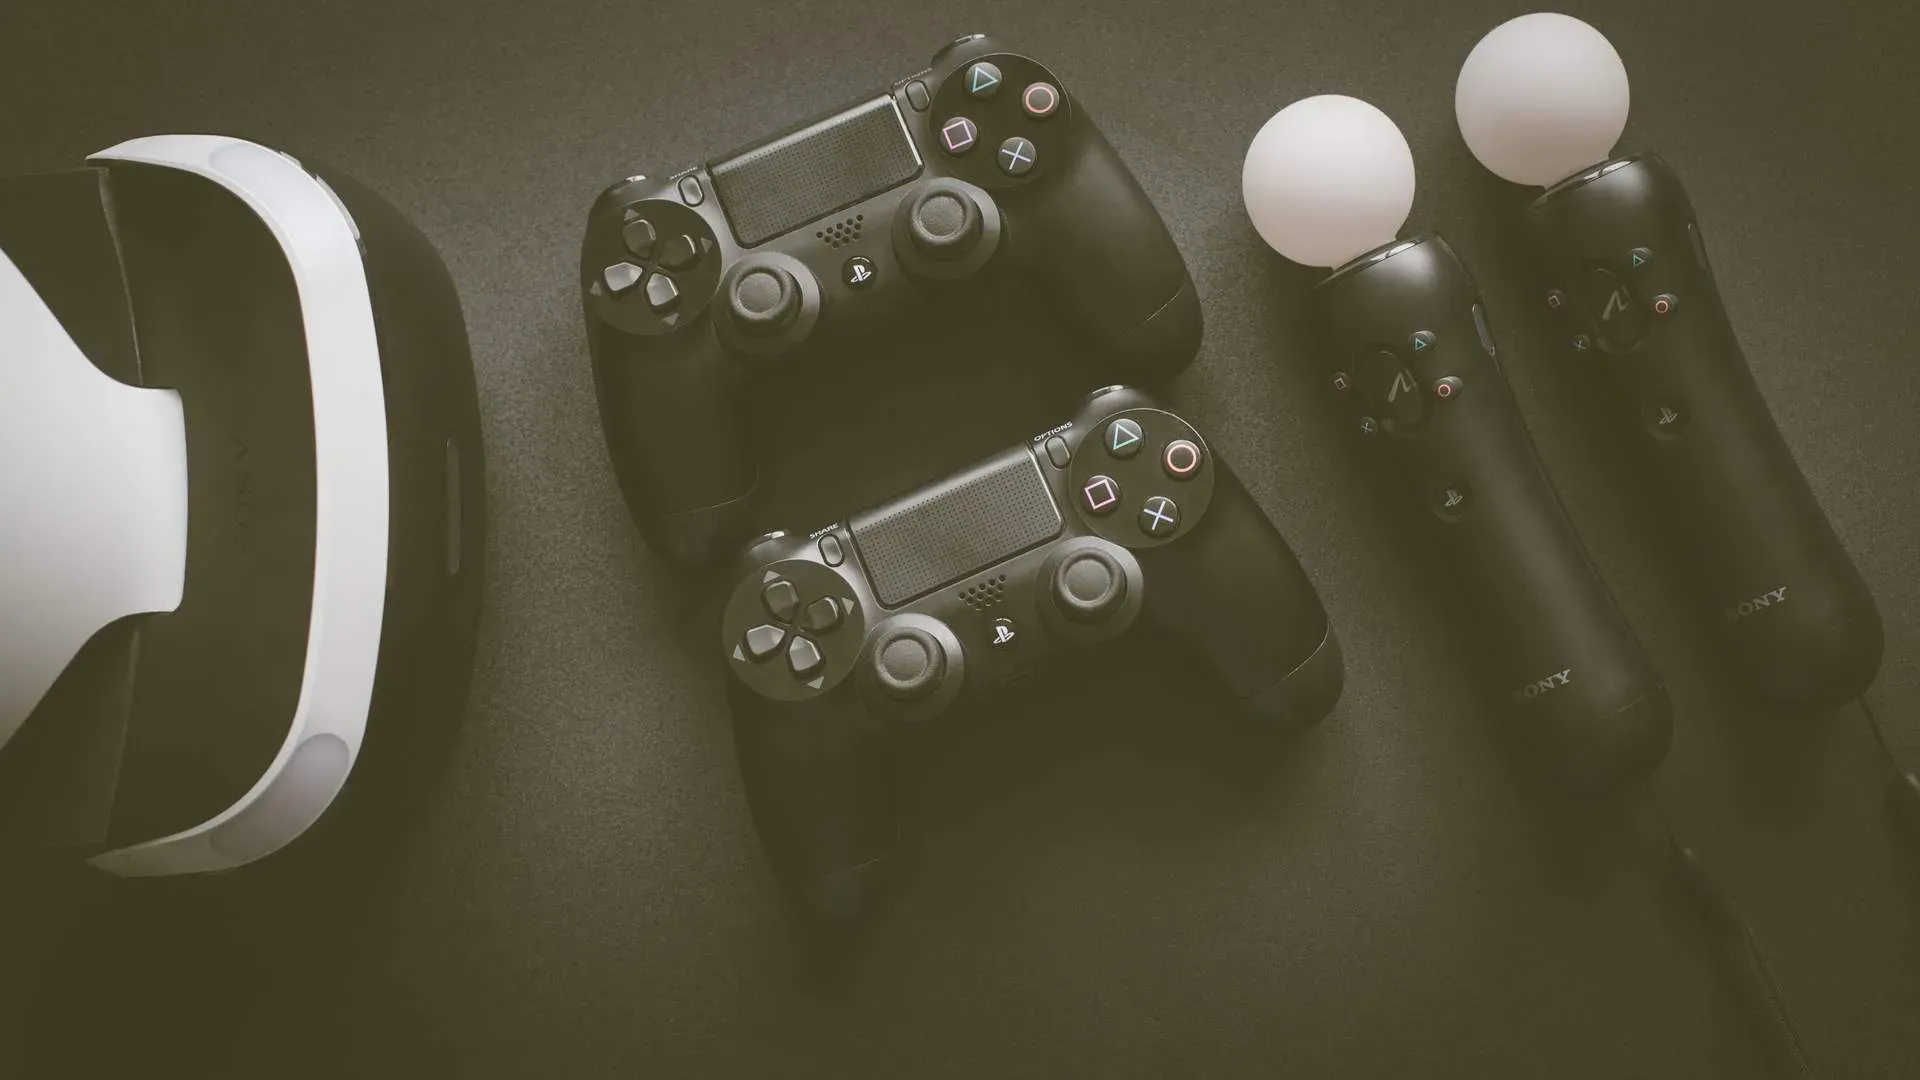 99%” dos jogos de PS4 testados serão compatíveis com PS5, diz CEO